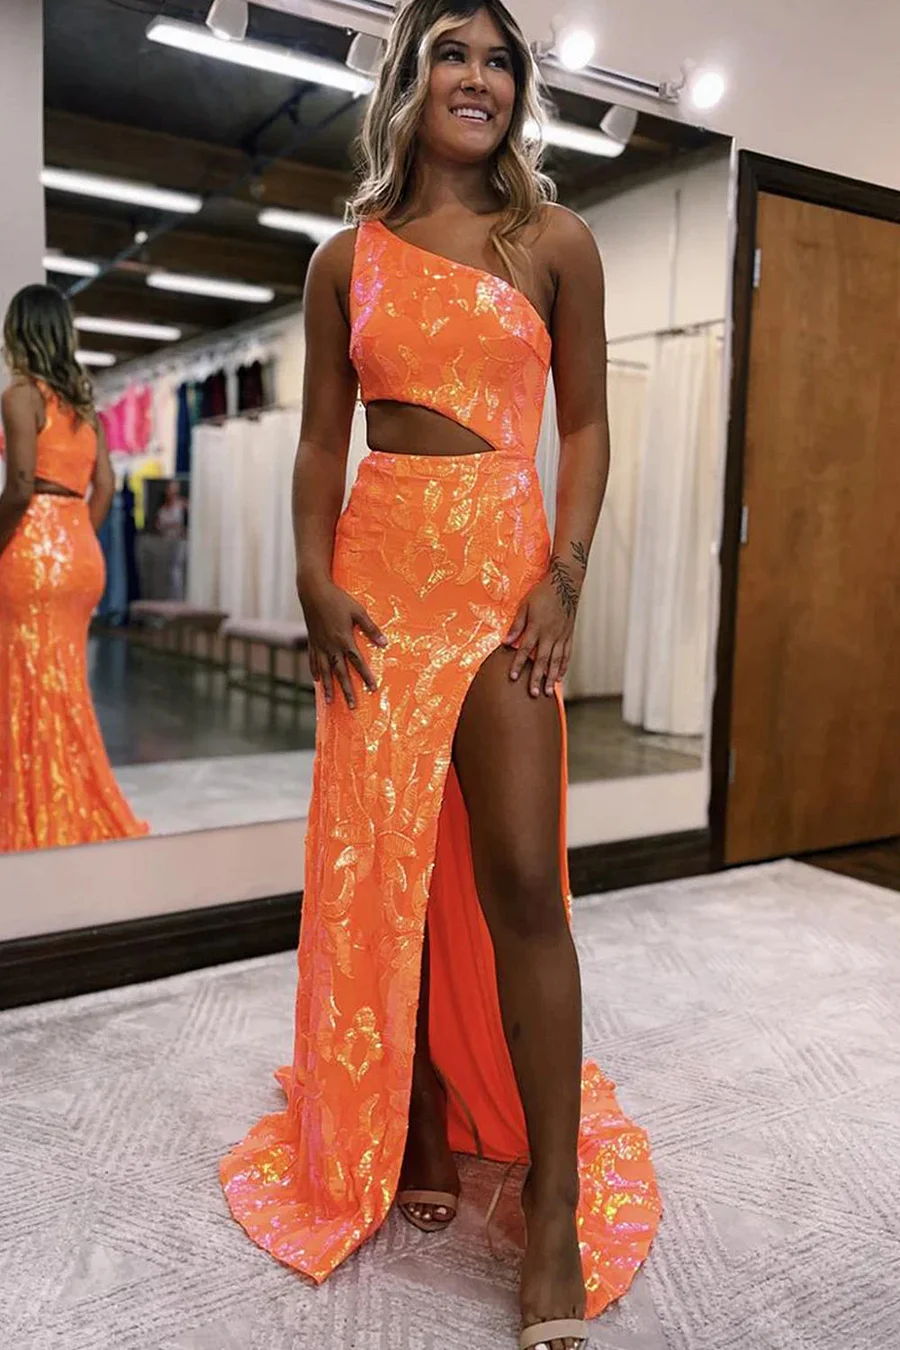 Sparkly Orange Sequin One Shoulder Long Prom Dress with Slit Y4277